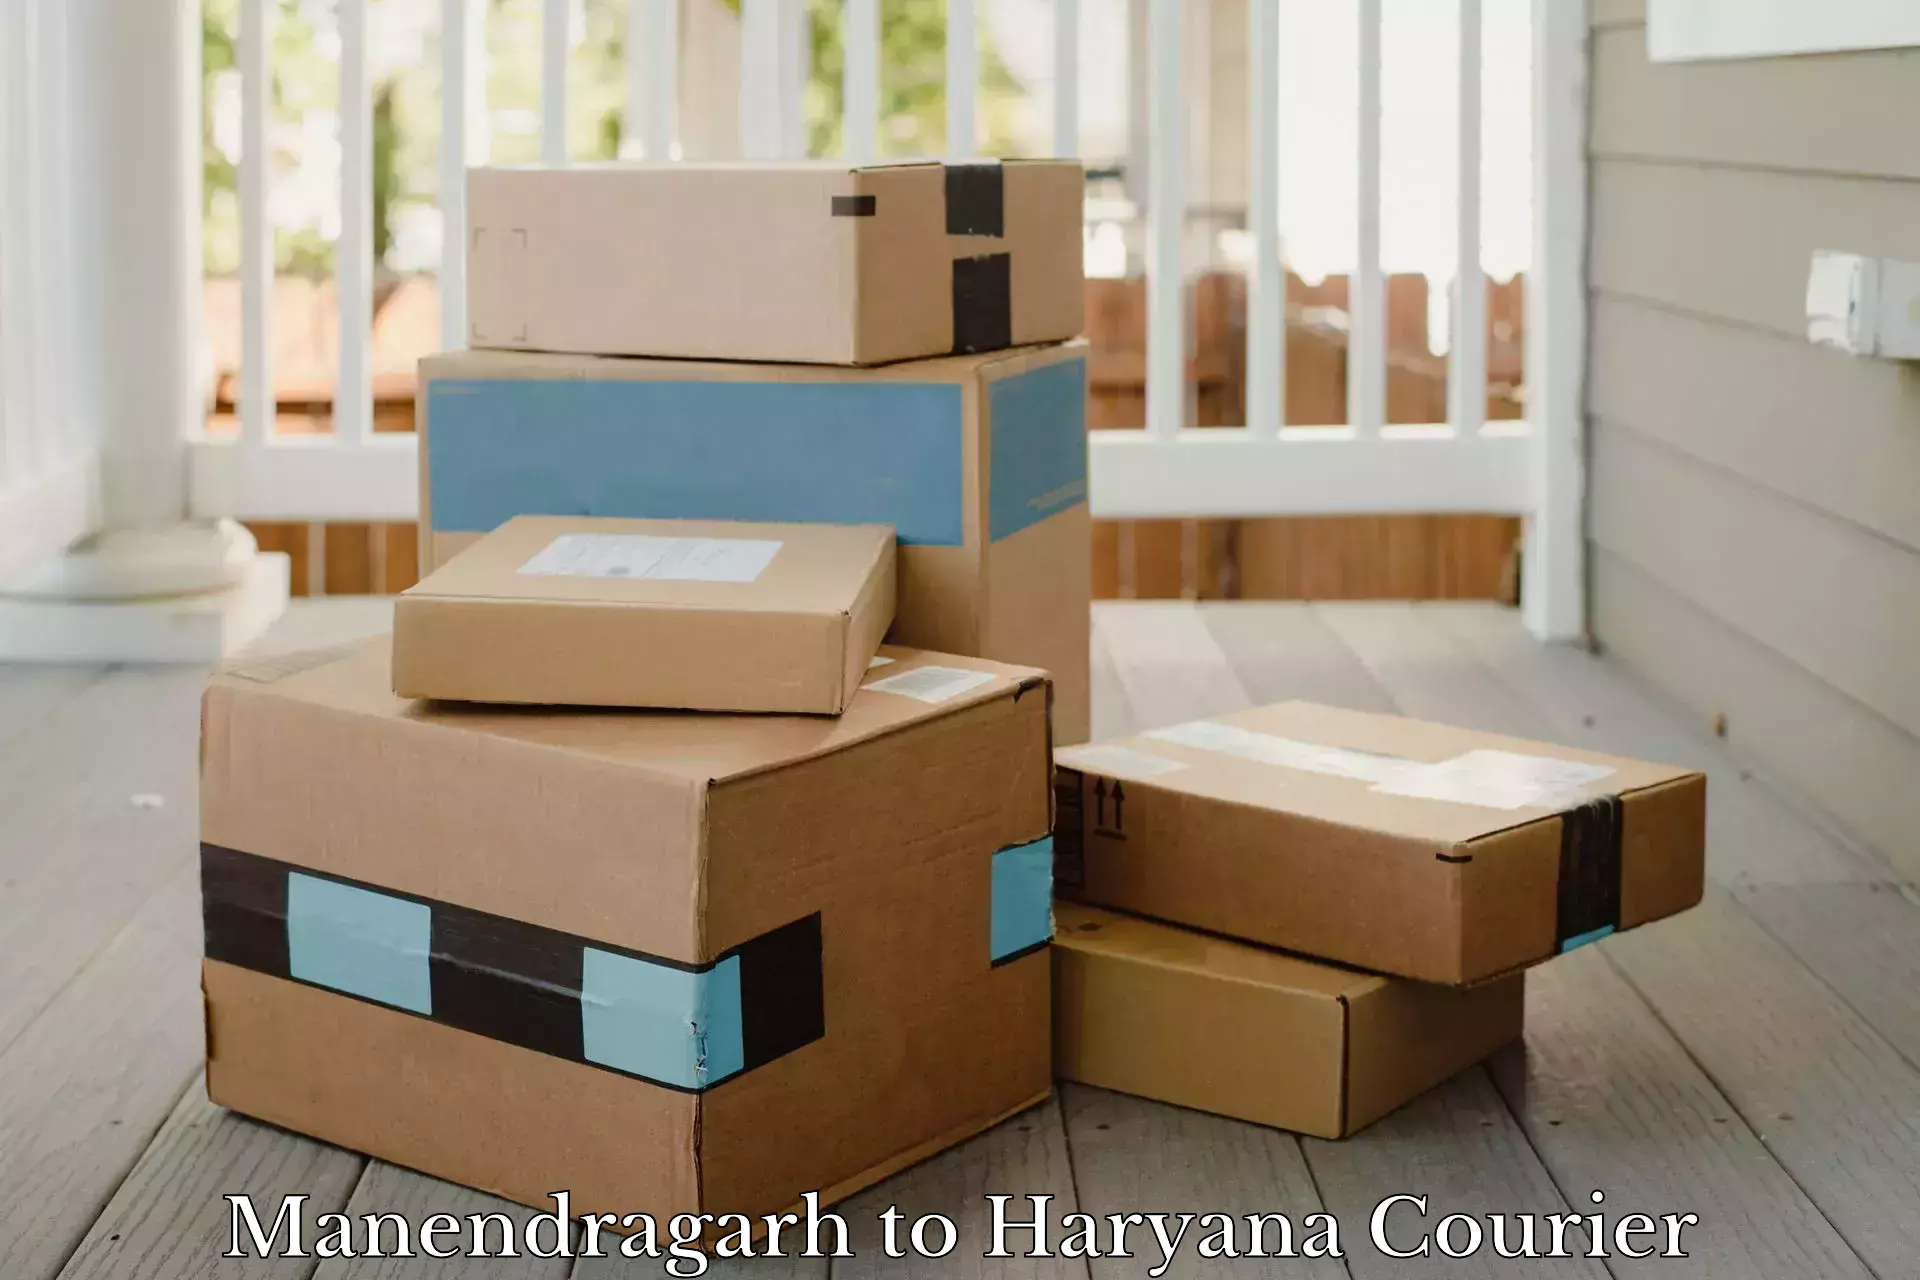 Customer-oriented courier services Manendragarh to Rewari